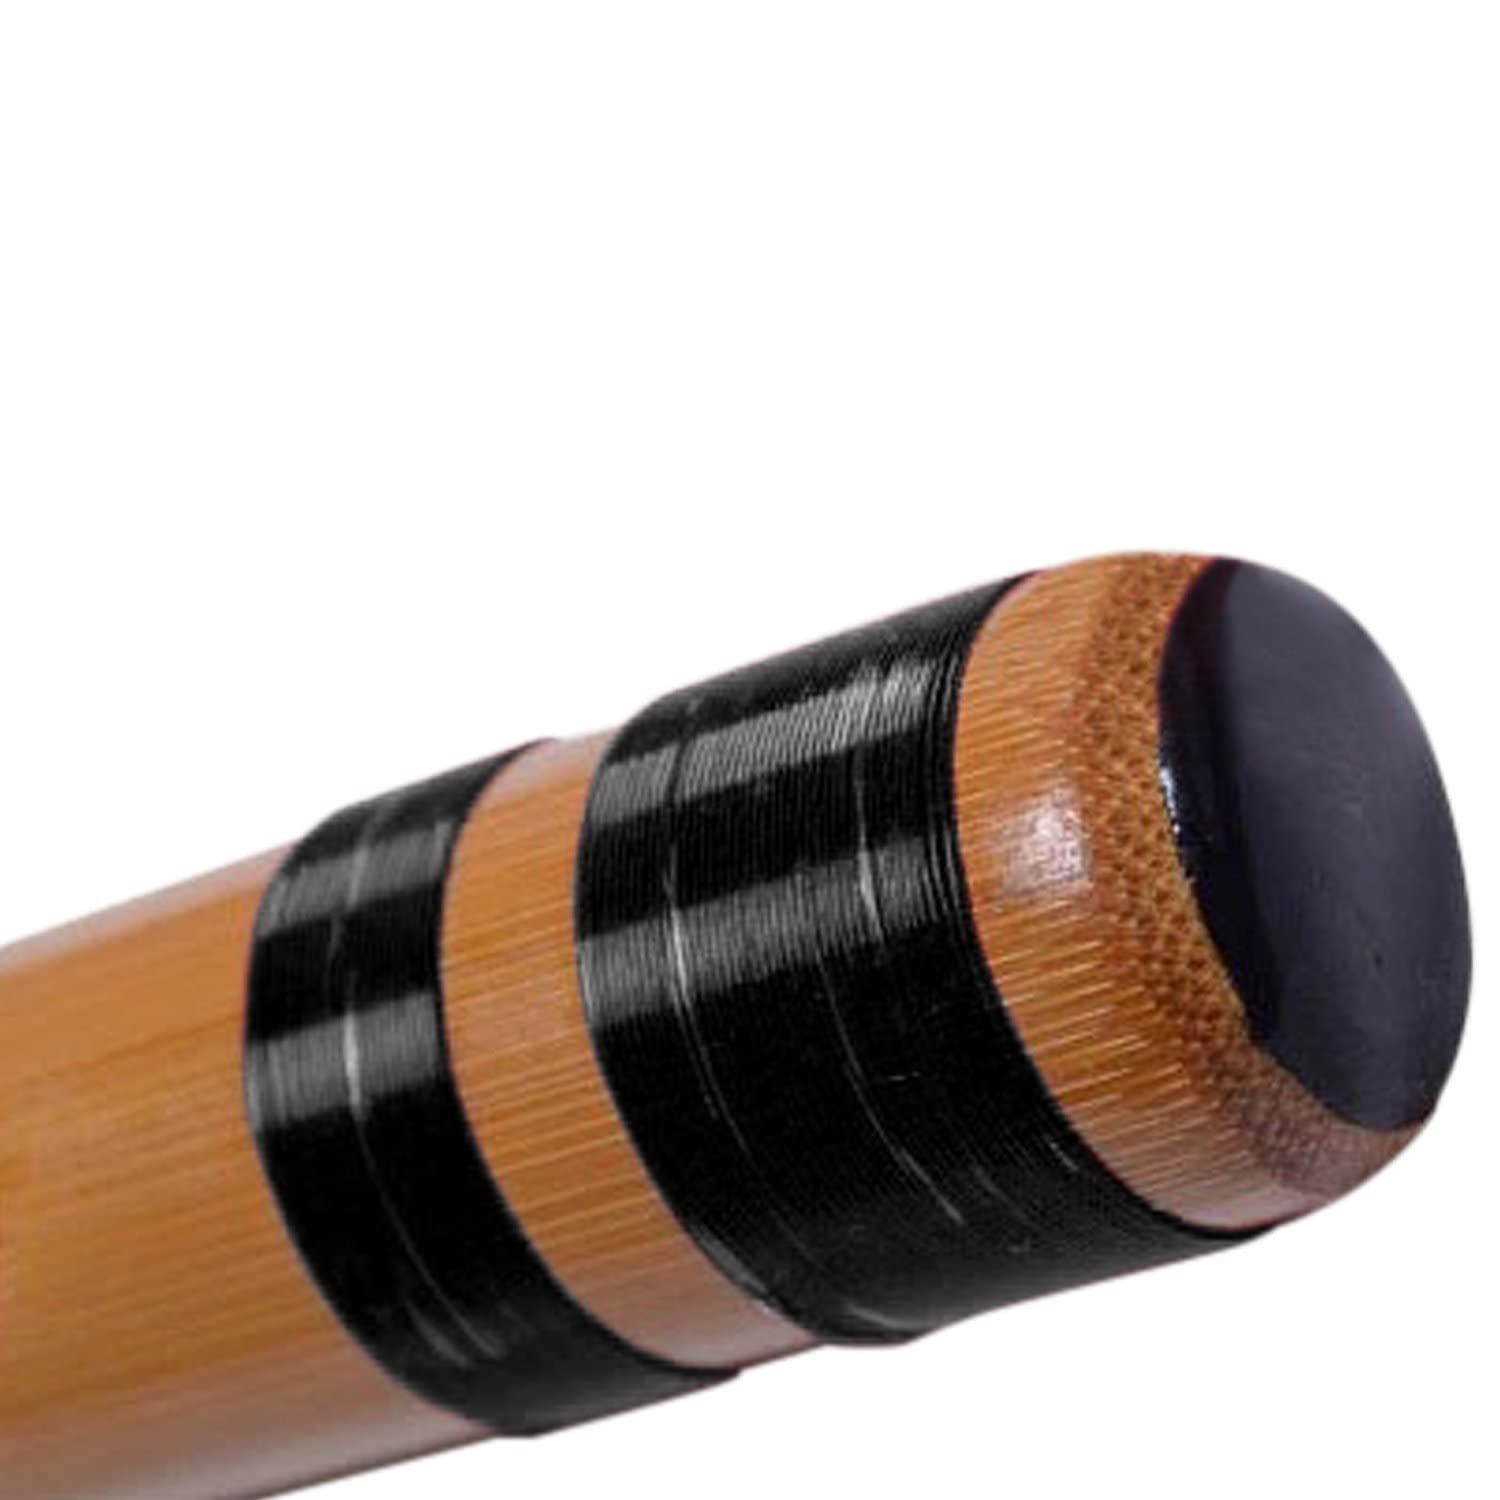 新品 7穴 七本調子 竹製篠笛 伝統的な楽器 竹笛横笛 山本竹細工屋 (黒